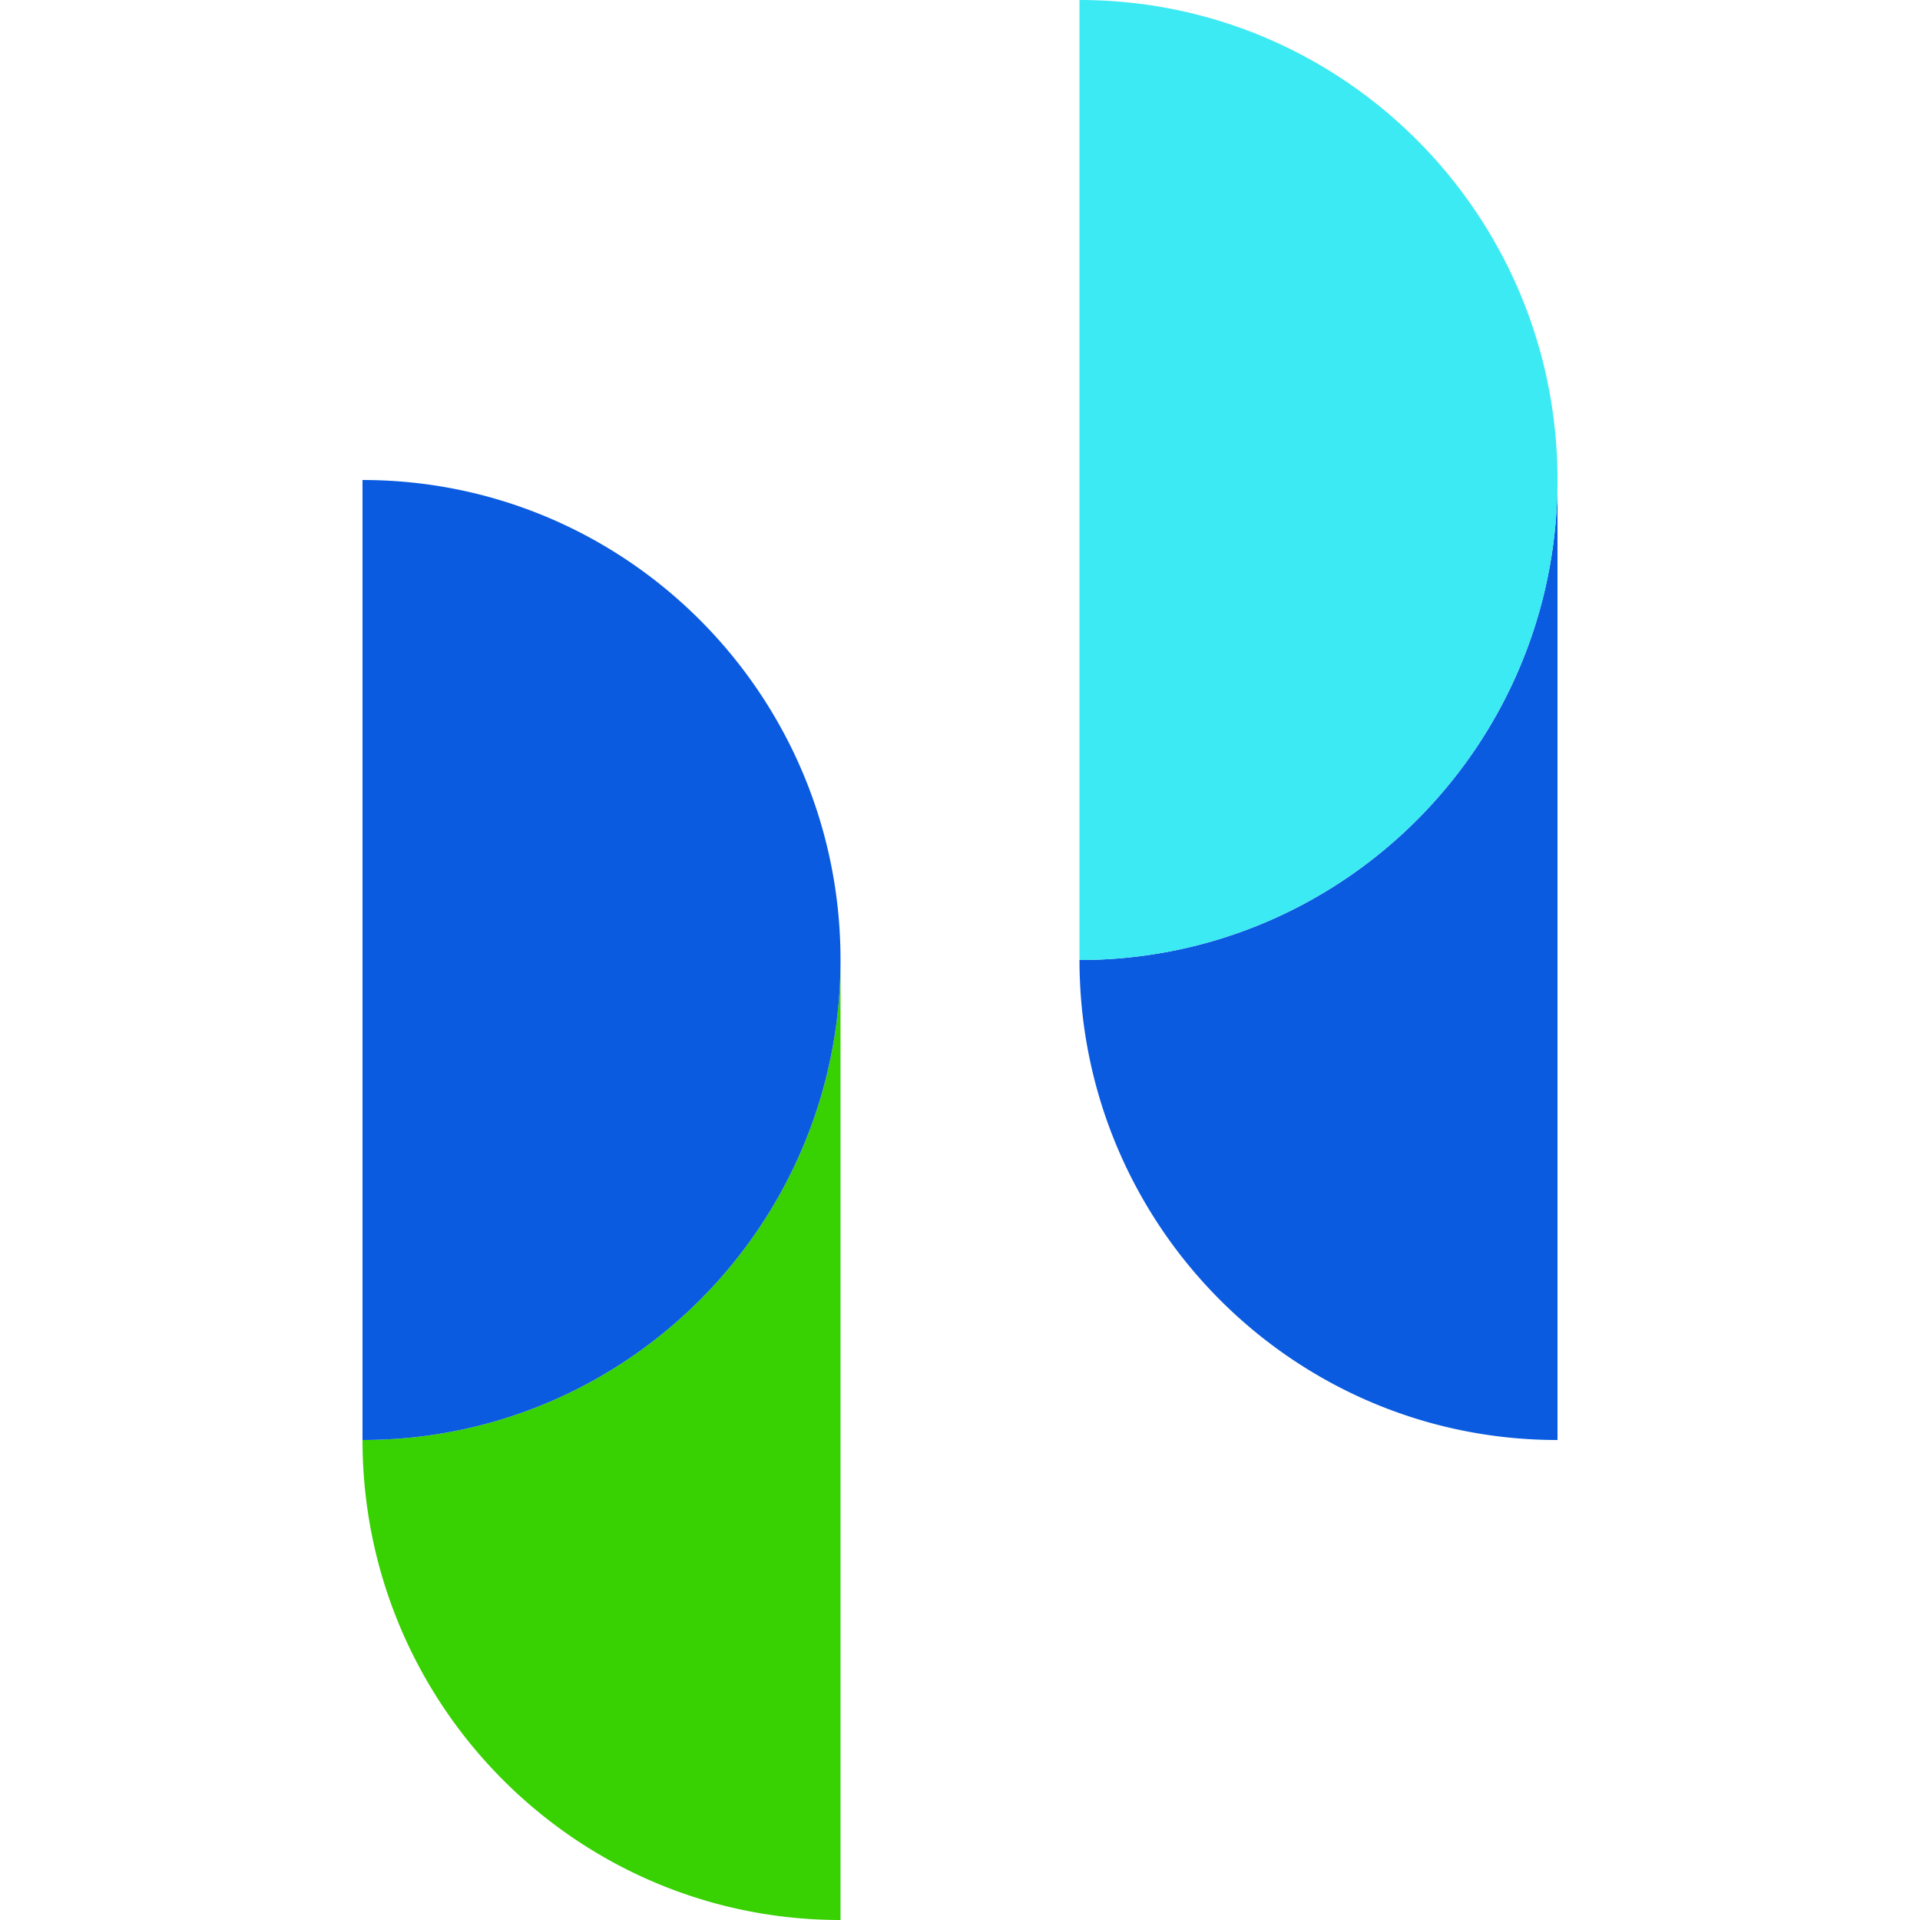 Phemex crypto exchange logo icon